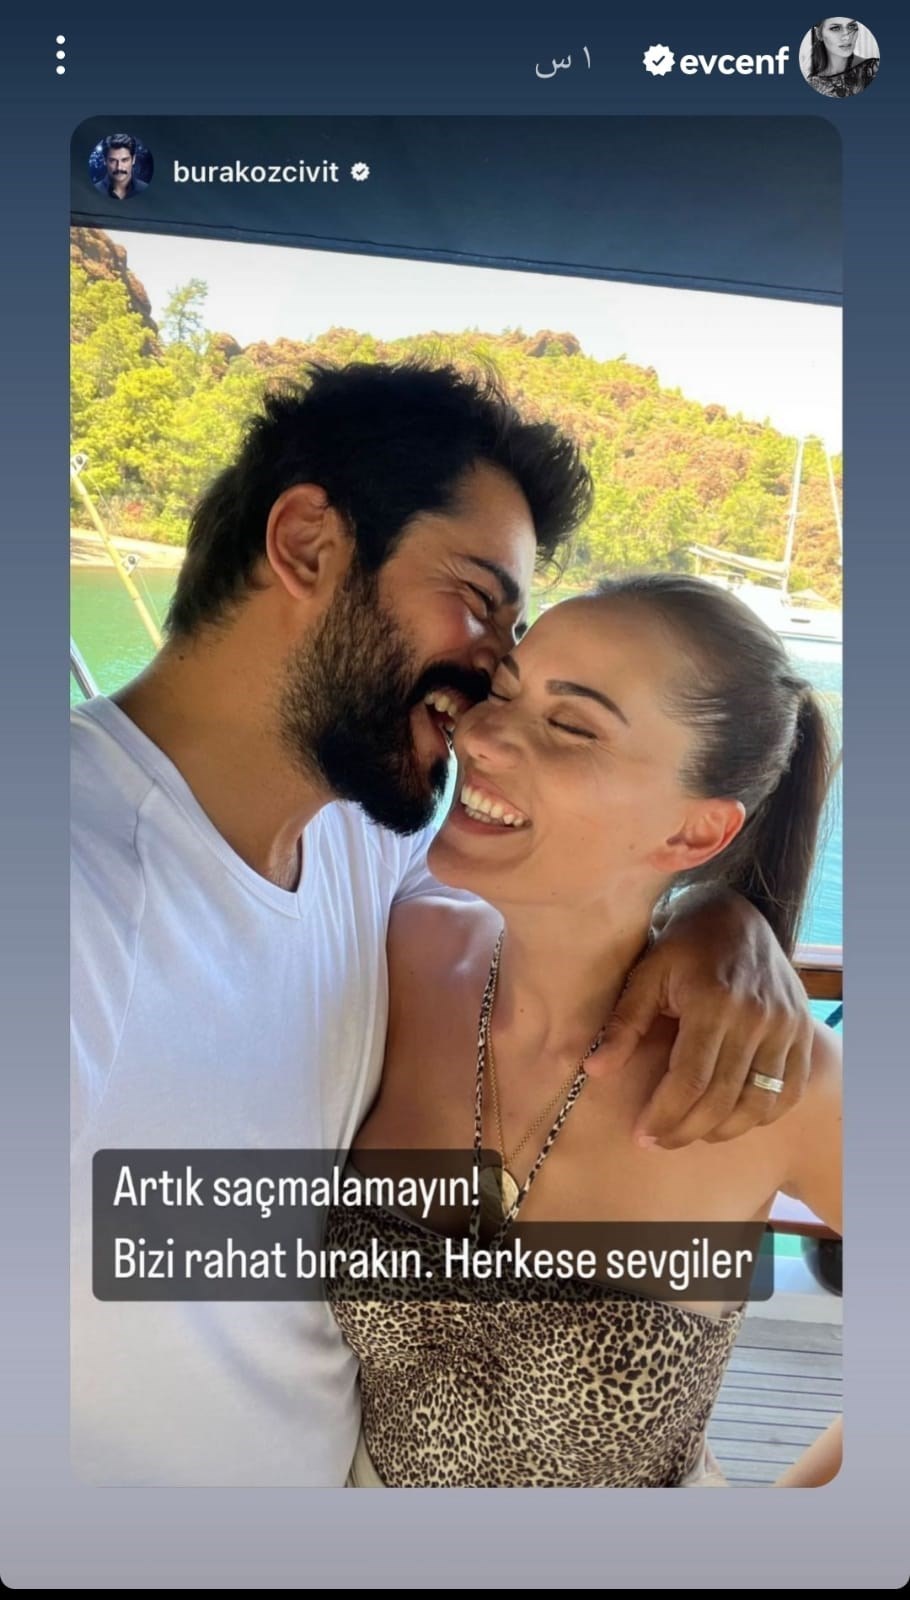 بصورة رومانسية..النجم التركي بوراك أوزجيفيت ينفي شائعات الانفصال